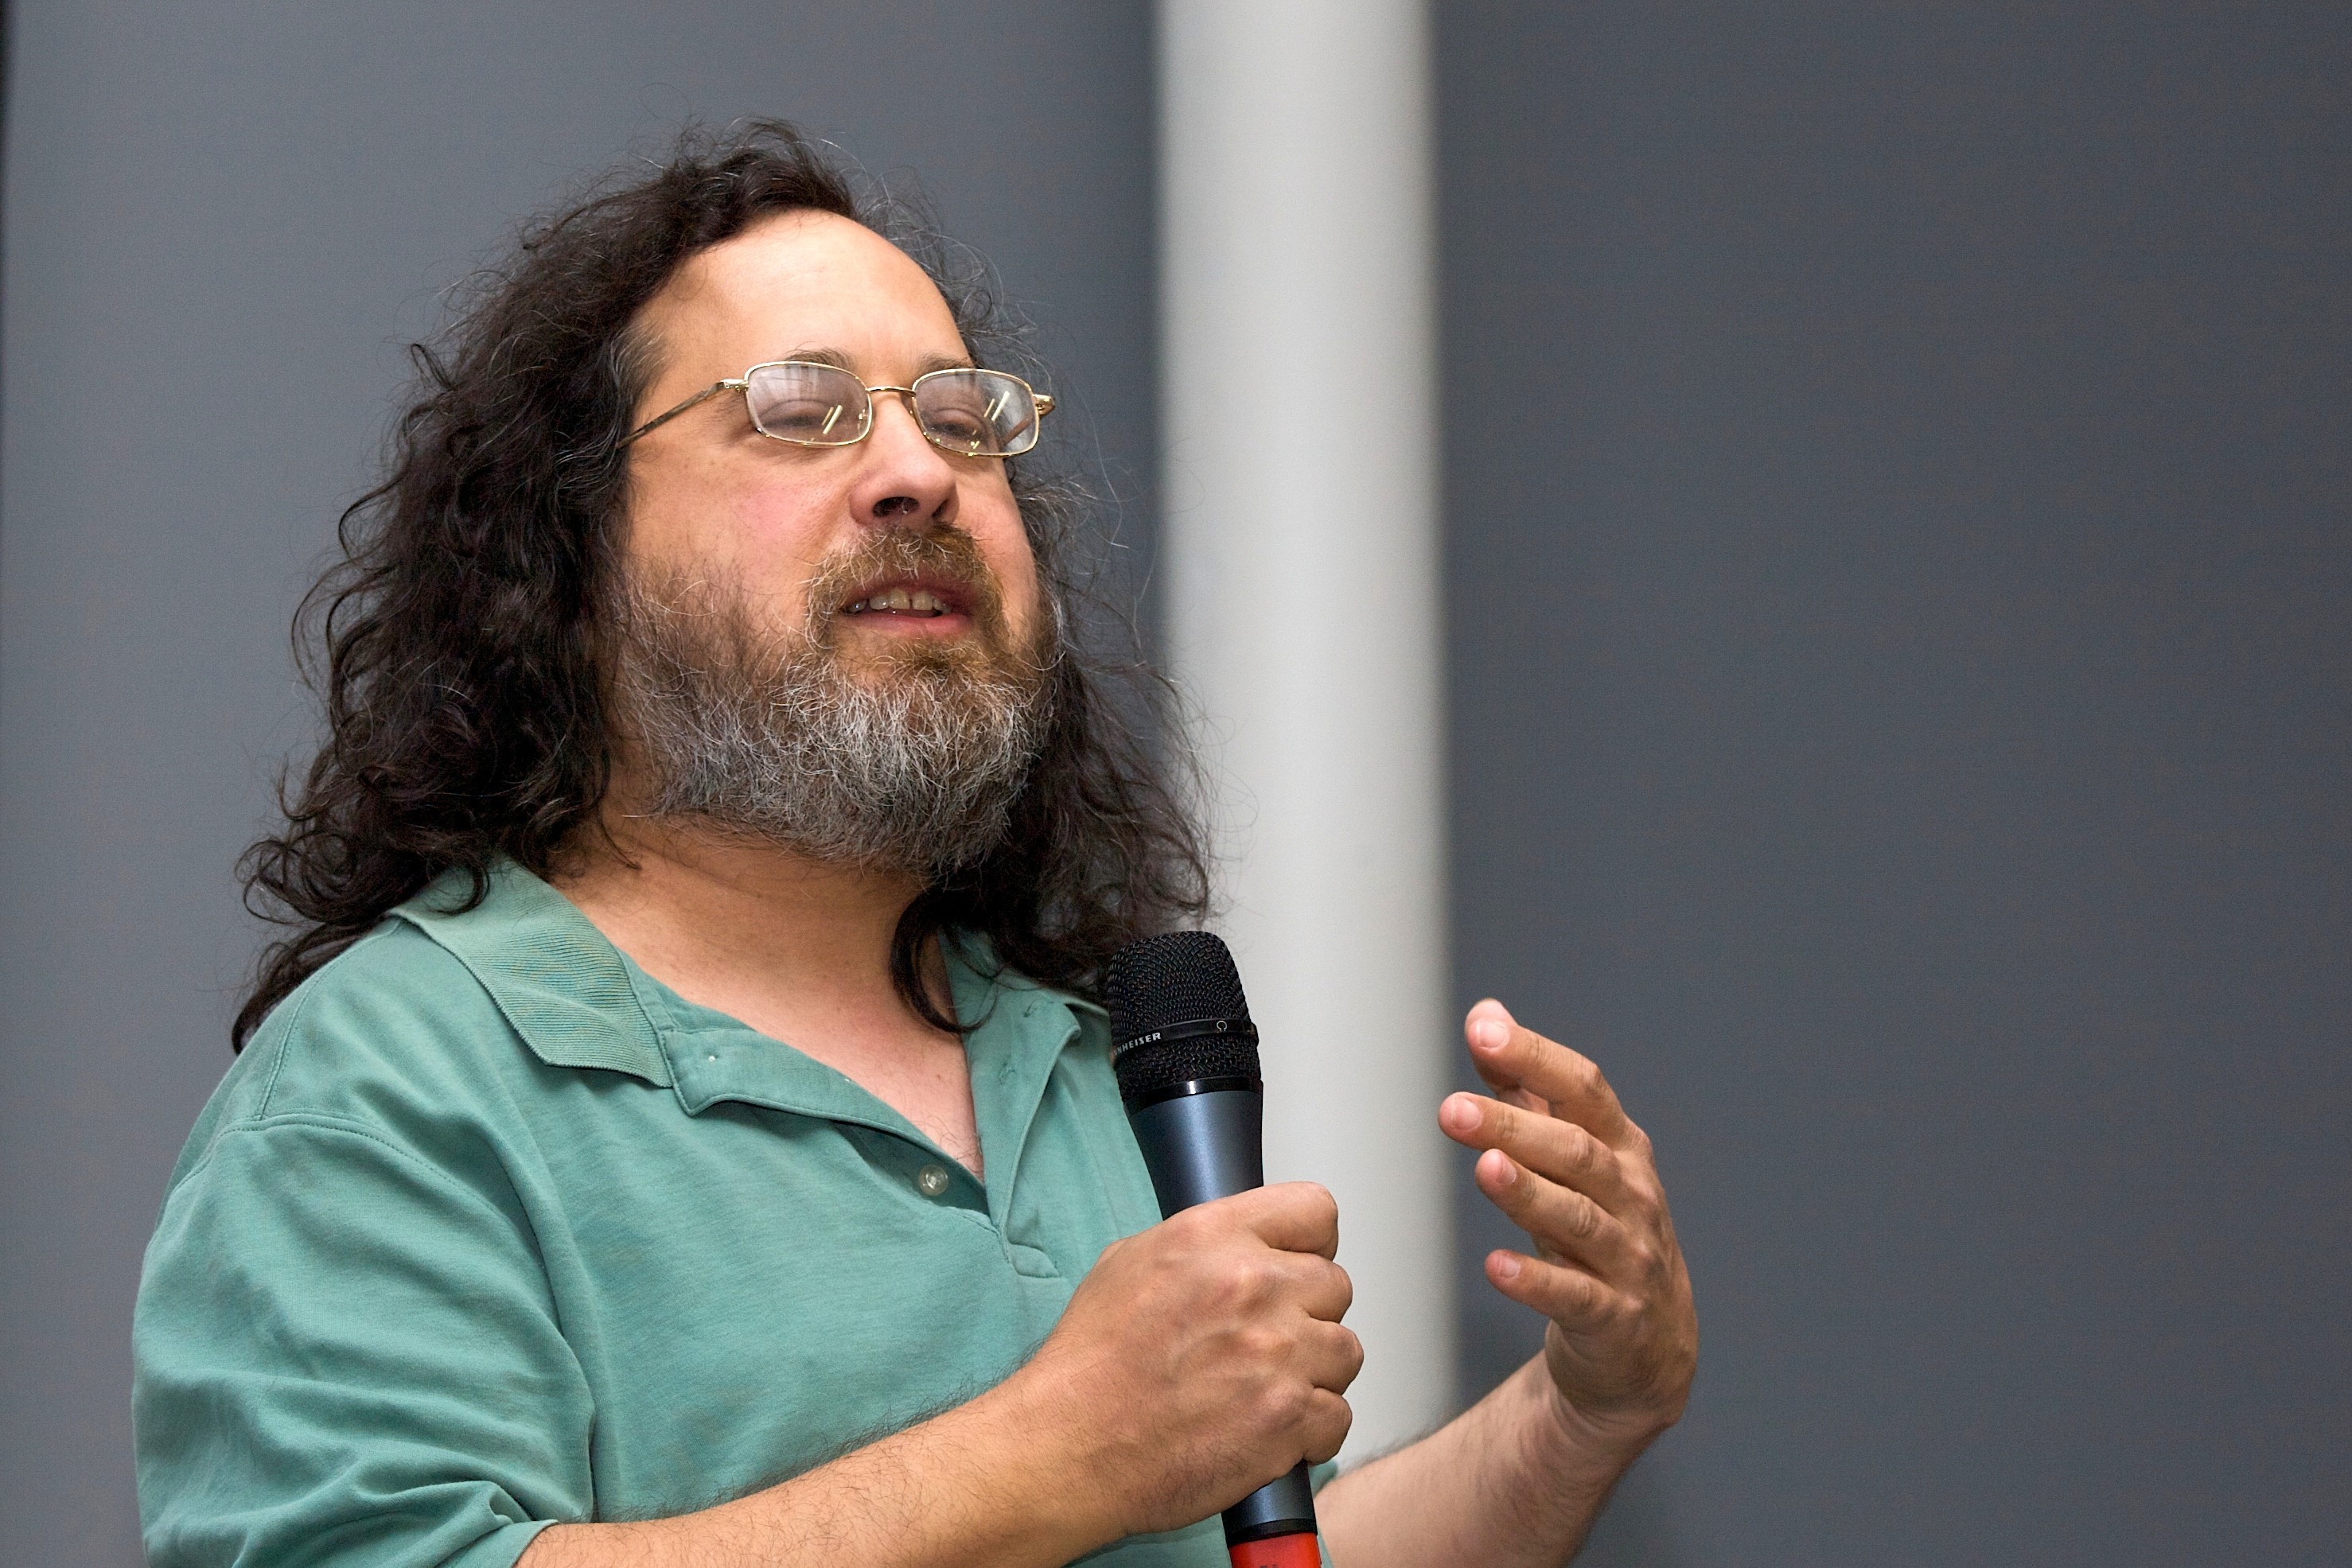 NicoBZH_-_Richard_Stallman_(by-sa)_(10)